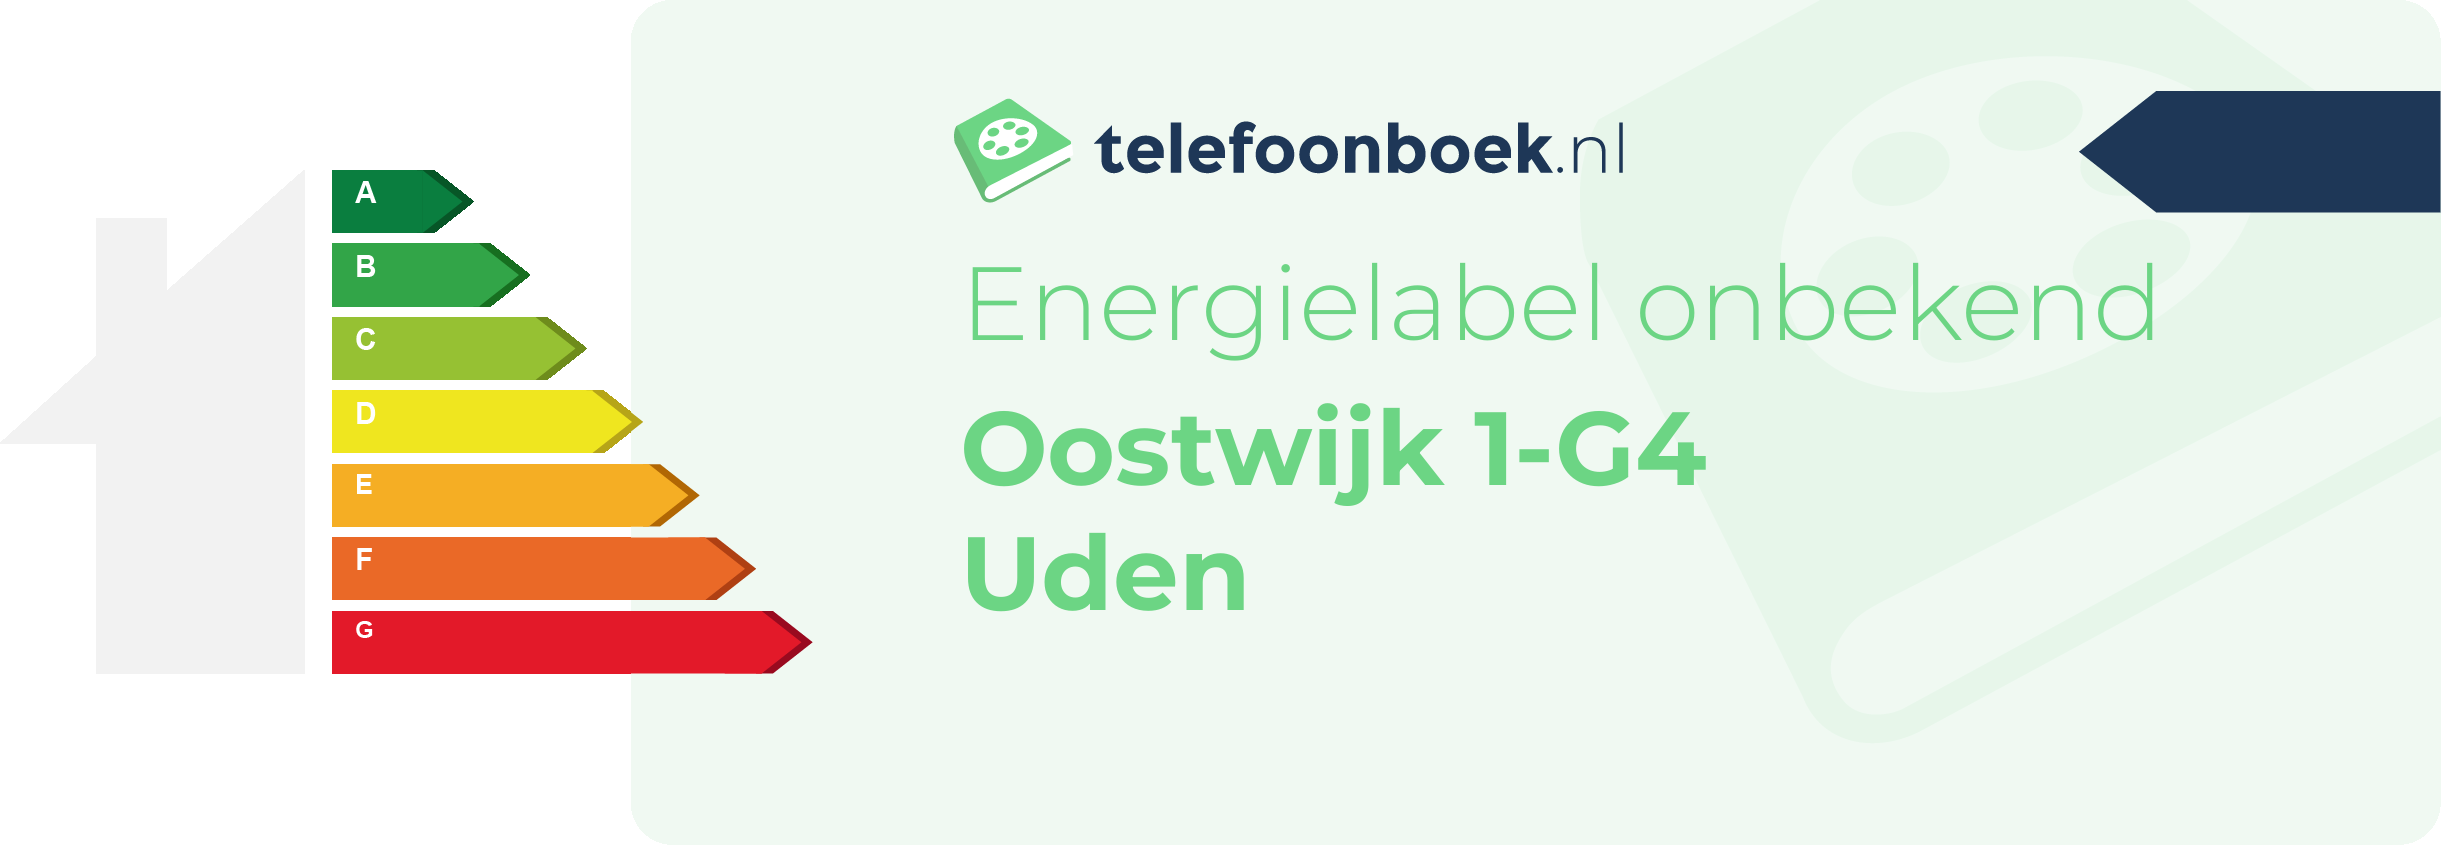 Energielabel Oostwijk 1-G4 Uden